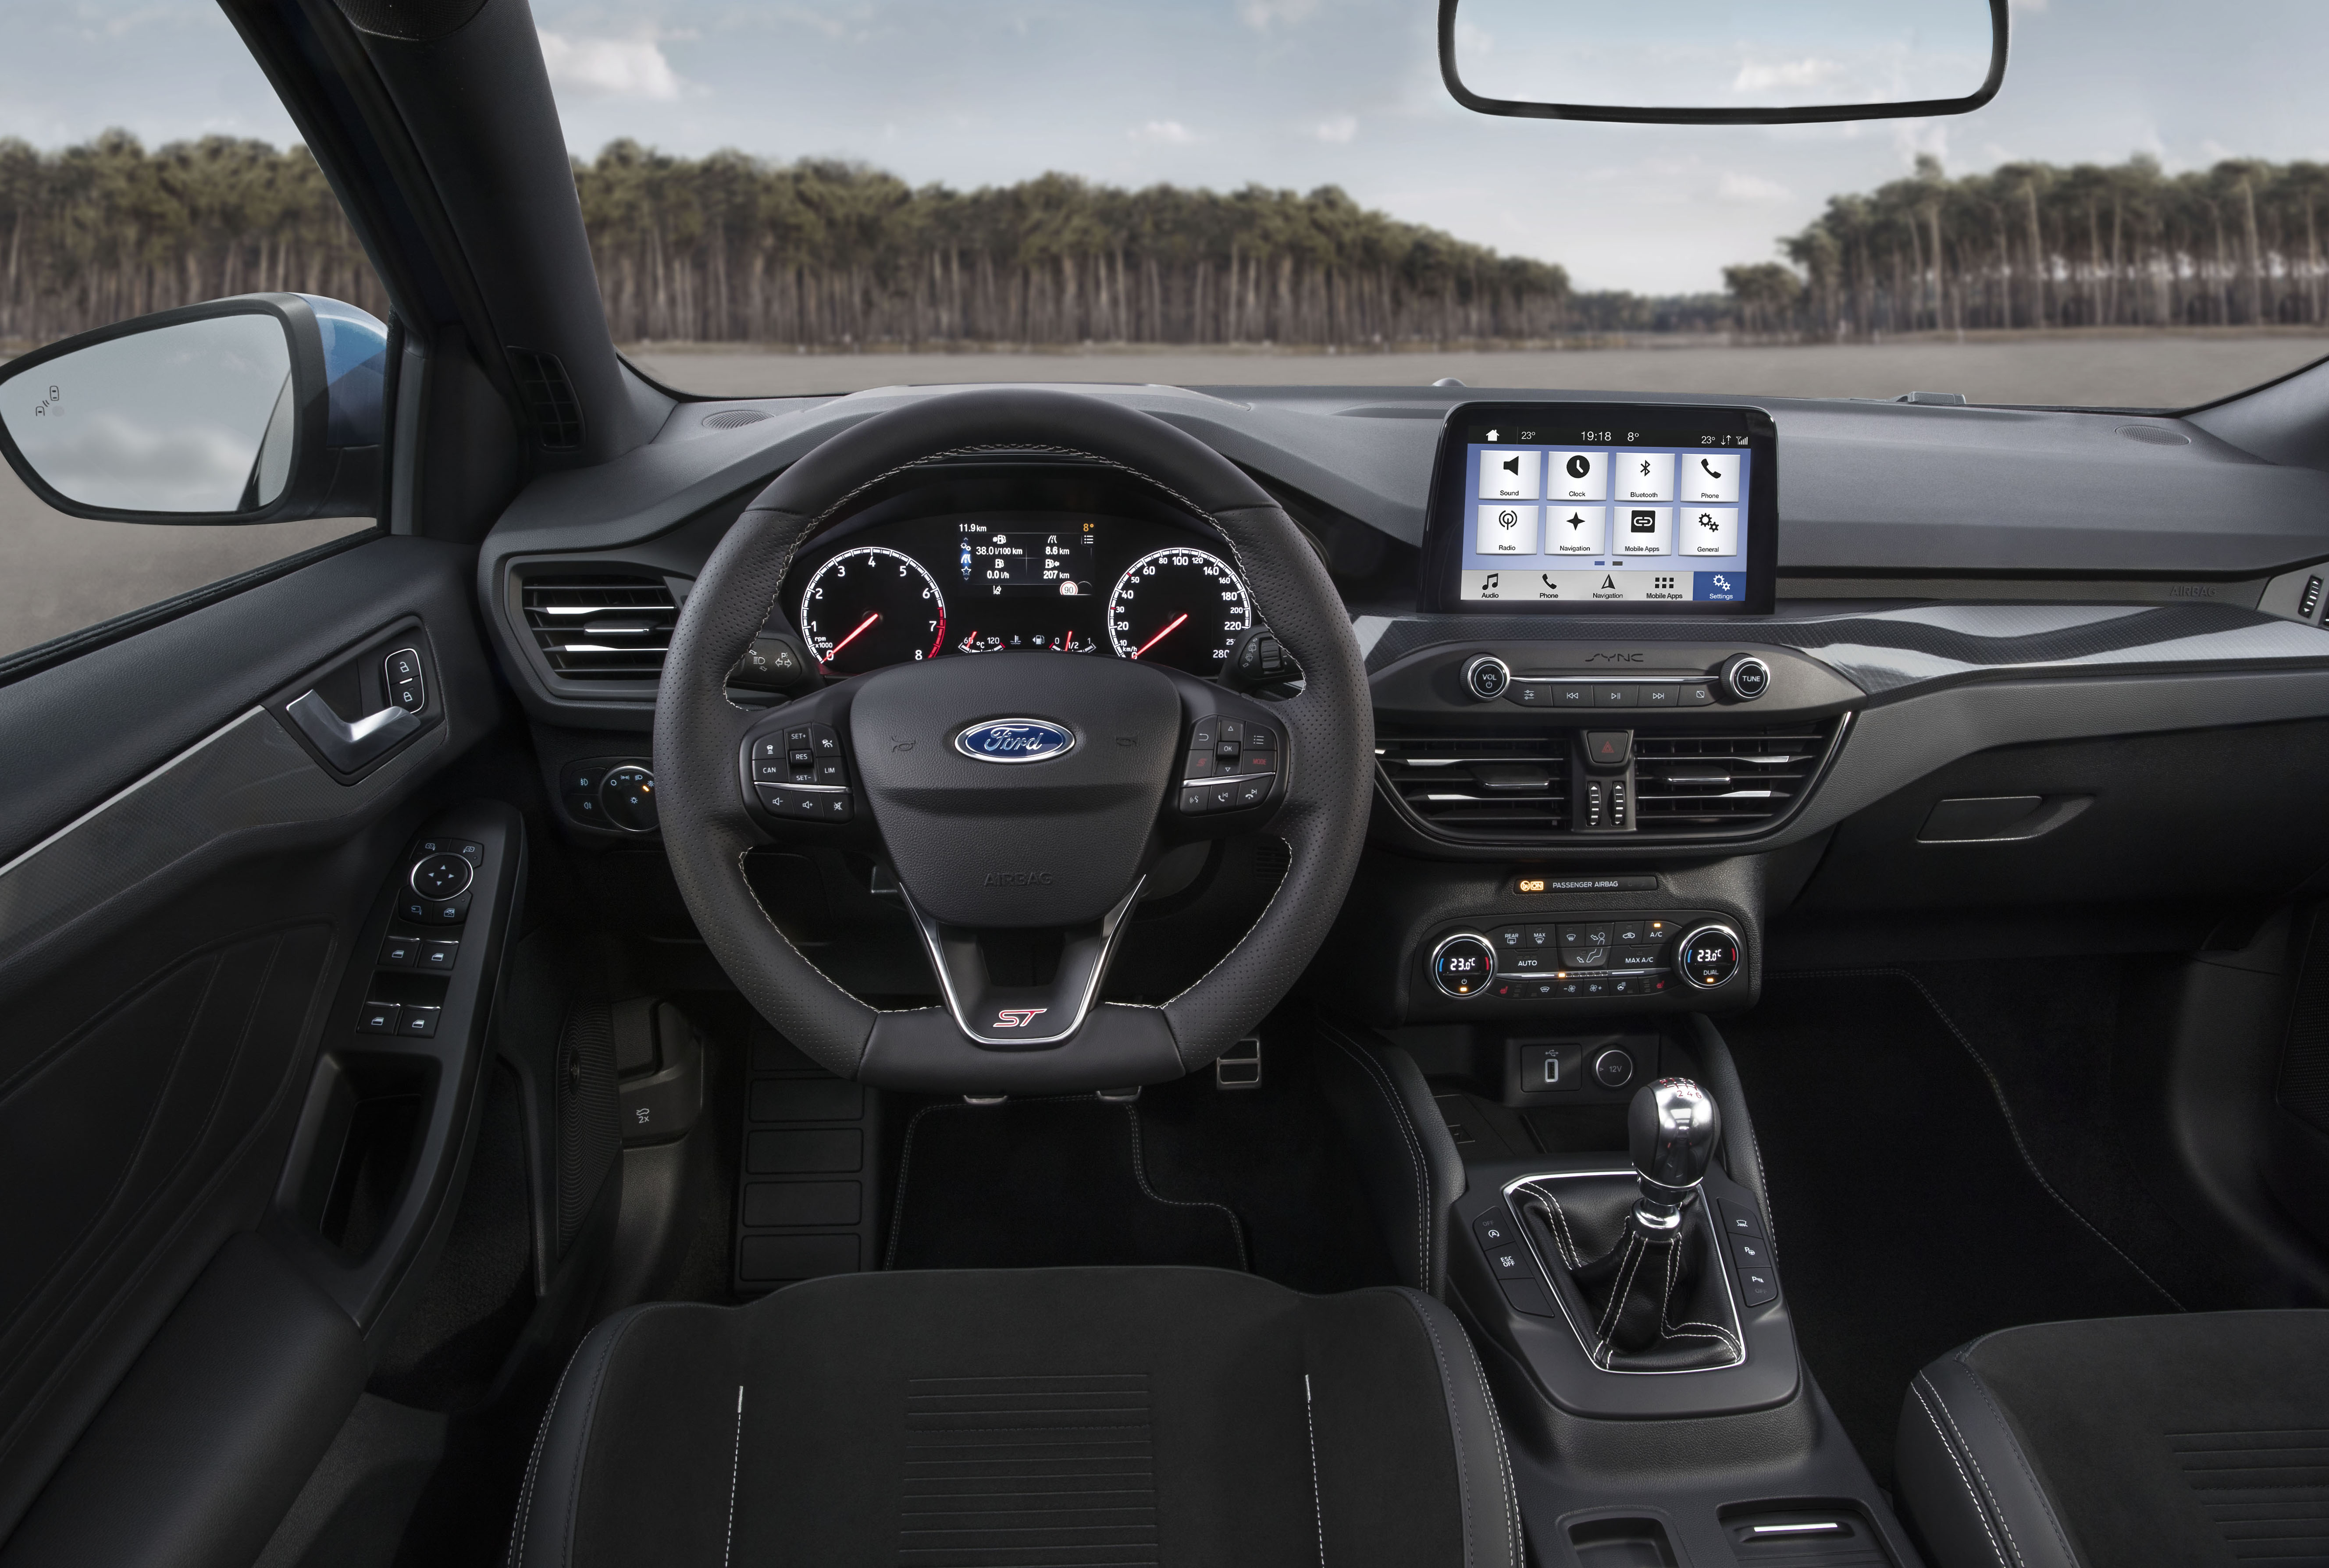 Ford Focus ST interior 2019